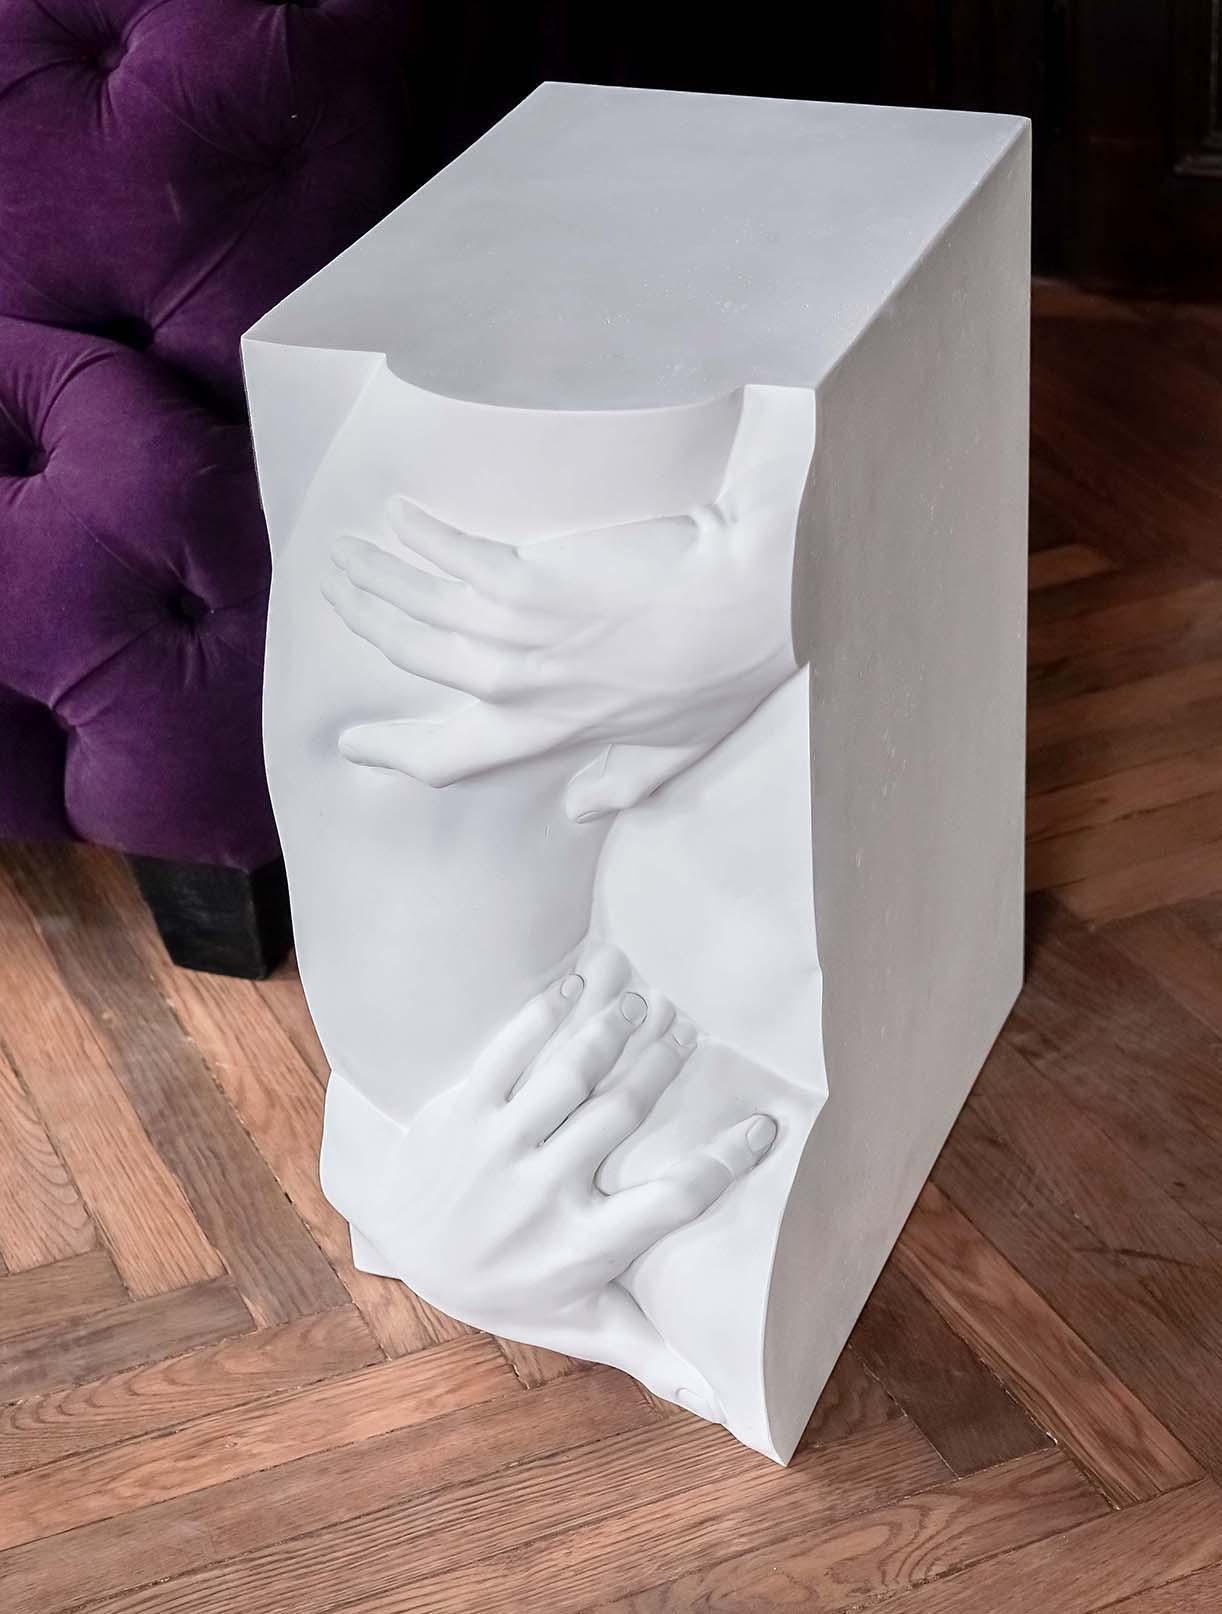 À partir de scans 3D extrêmement détaillés des plus importantes sculptures classiques de tous les temps, Eduard Locota a découpé et extrait numériquement la partie essentielle de l'œuvre d'art, puis l'a physiquement imprimée en 3D pour en faire une